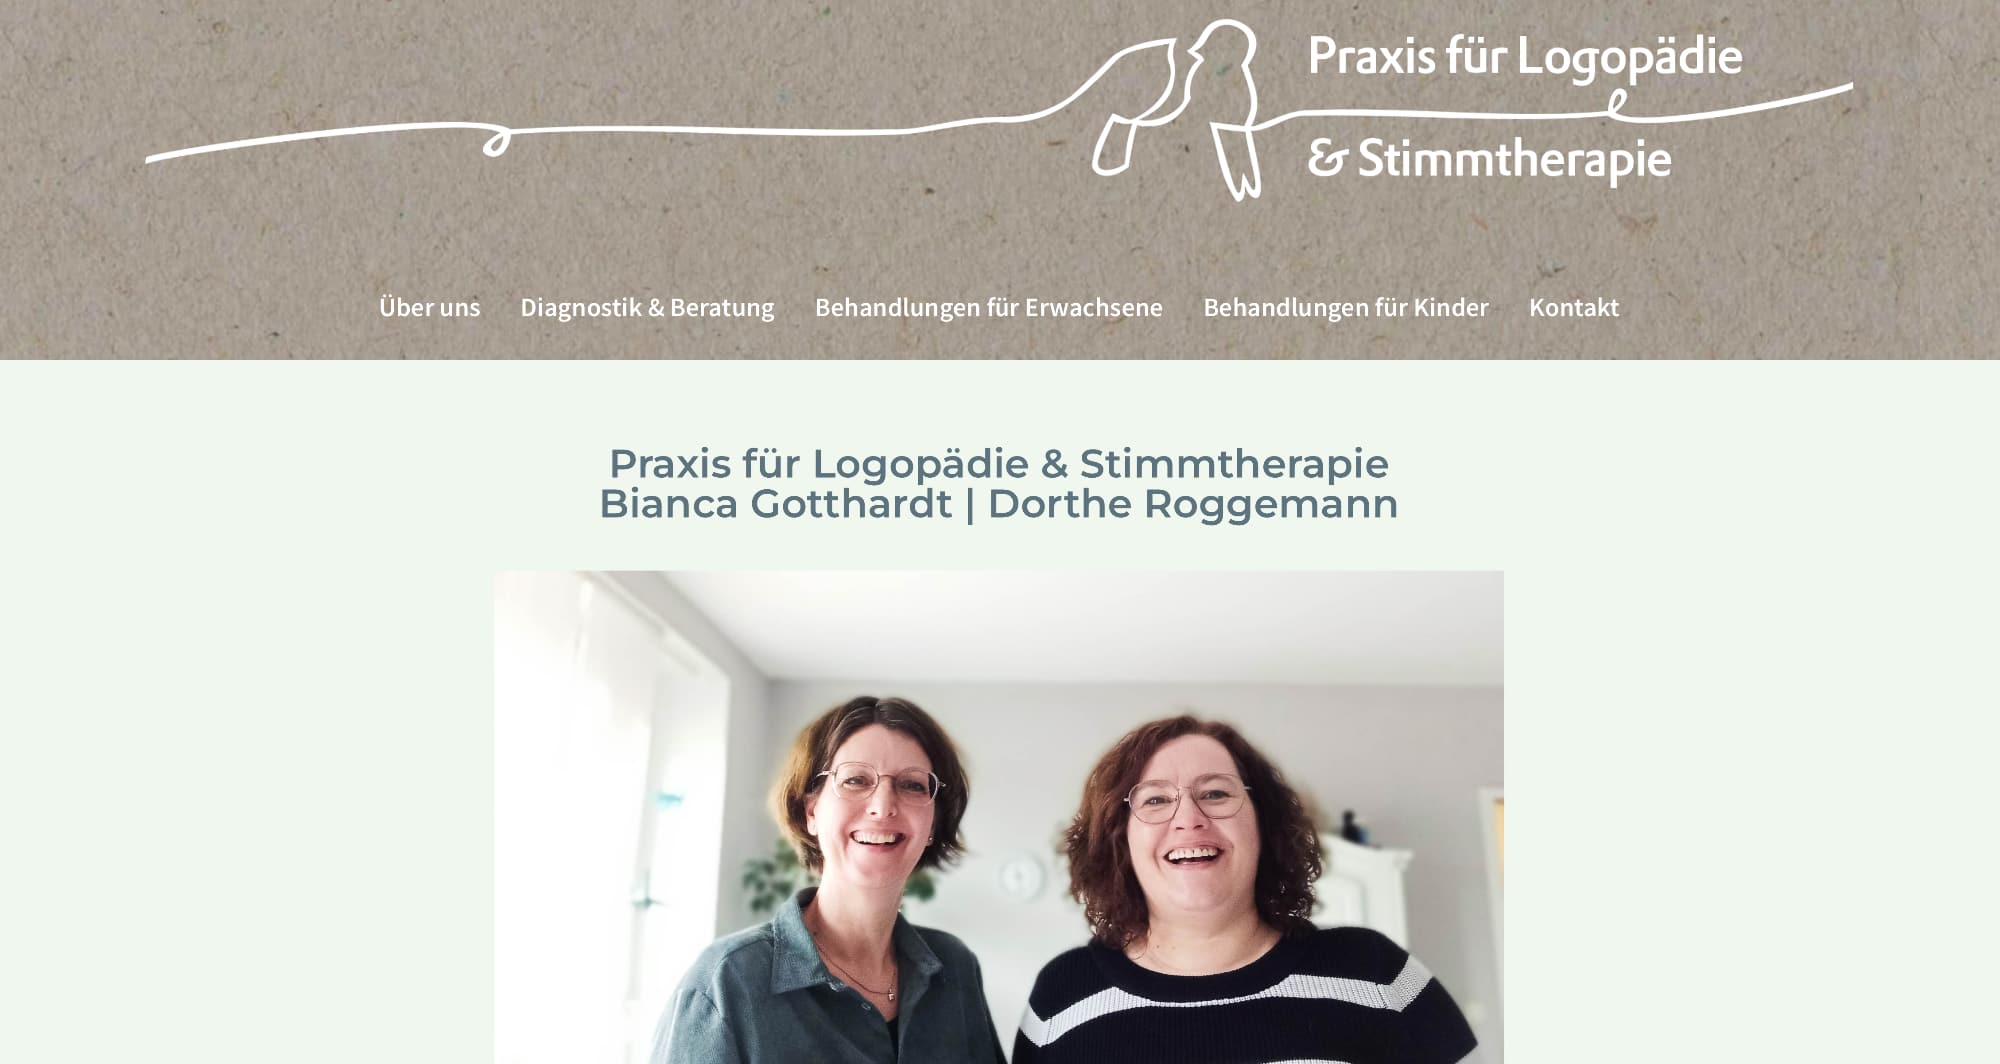 Praxis für Logopädie & Stimmtherapie Bianca Gotthardt | Dorthe Roggemann, Hasbergen